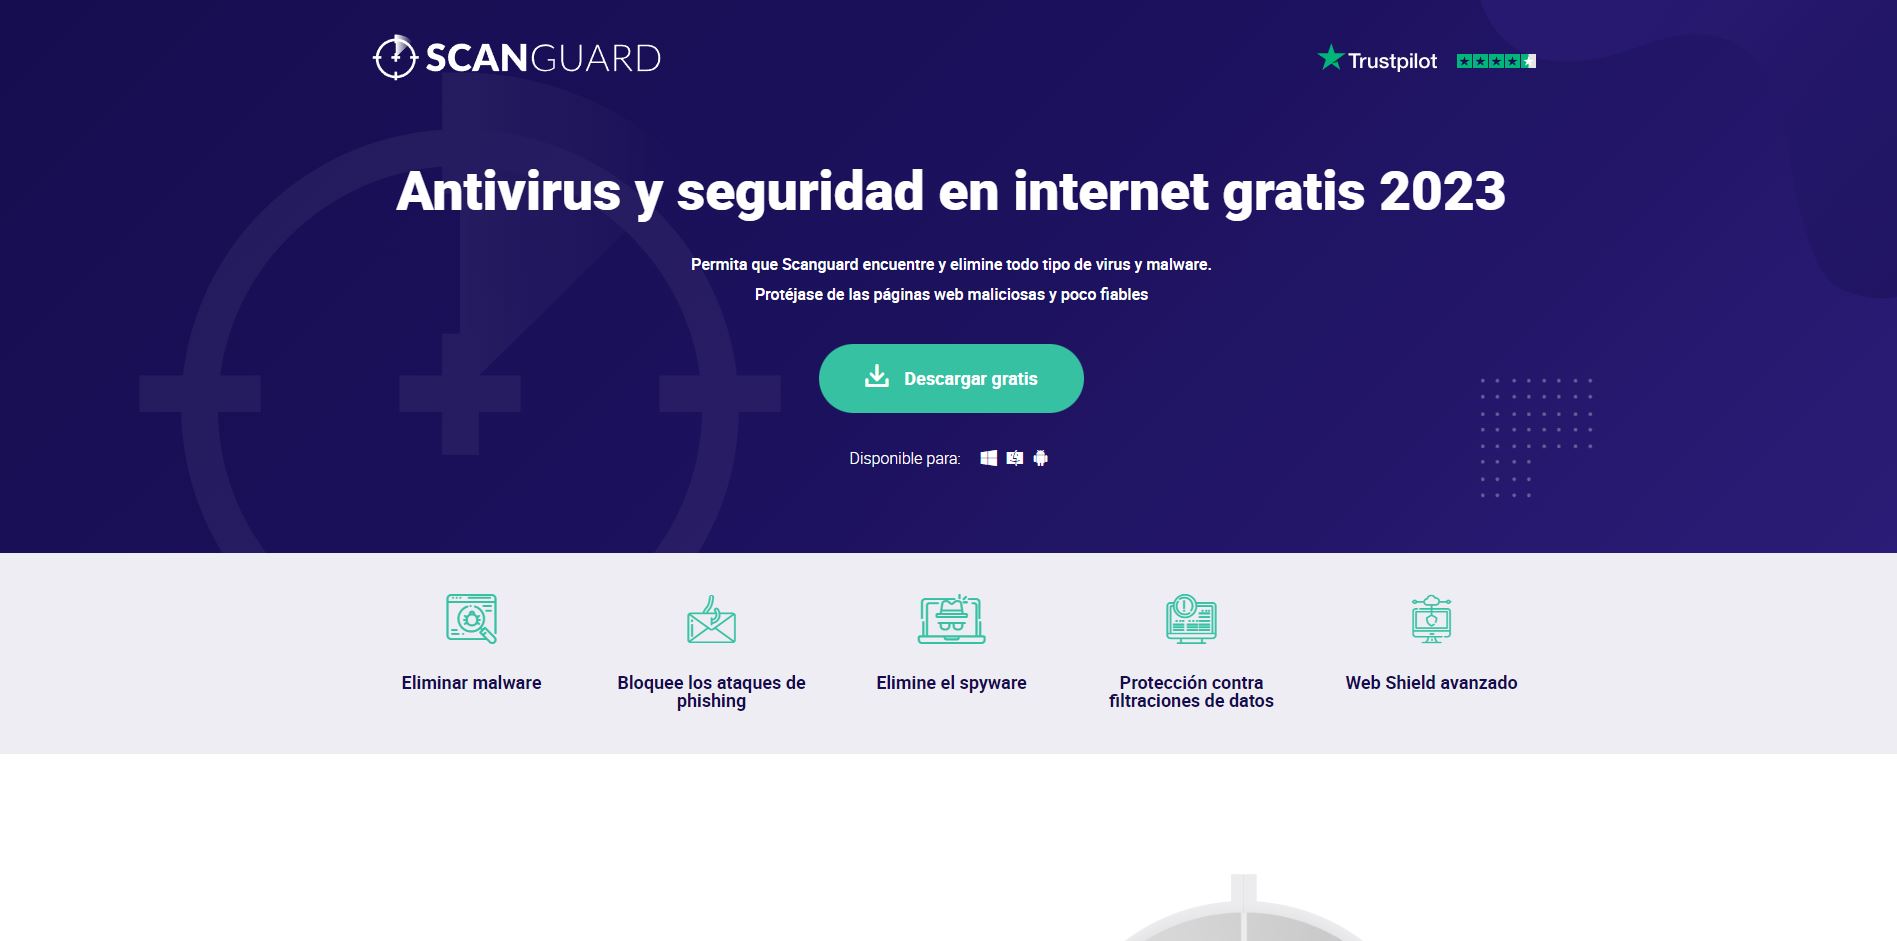 Scanguard-Antivirus-en-2023-merece-la-pena